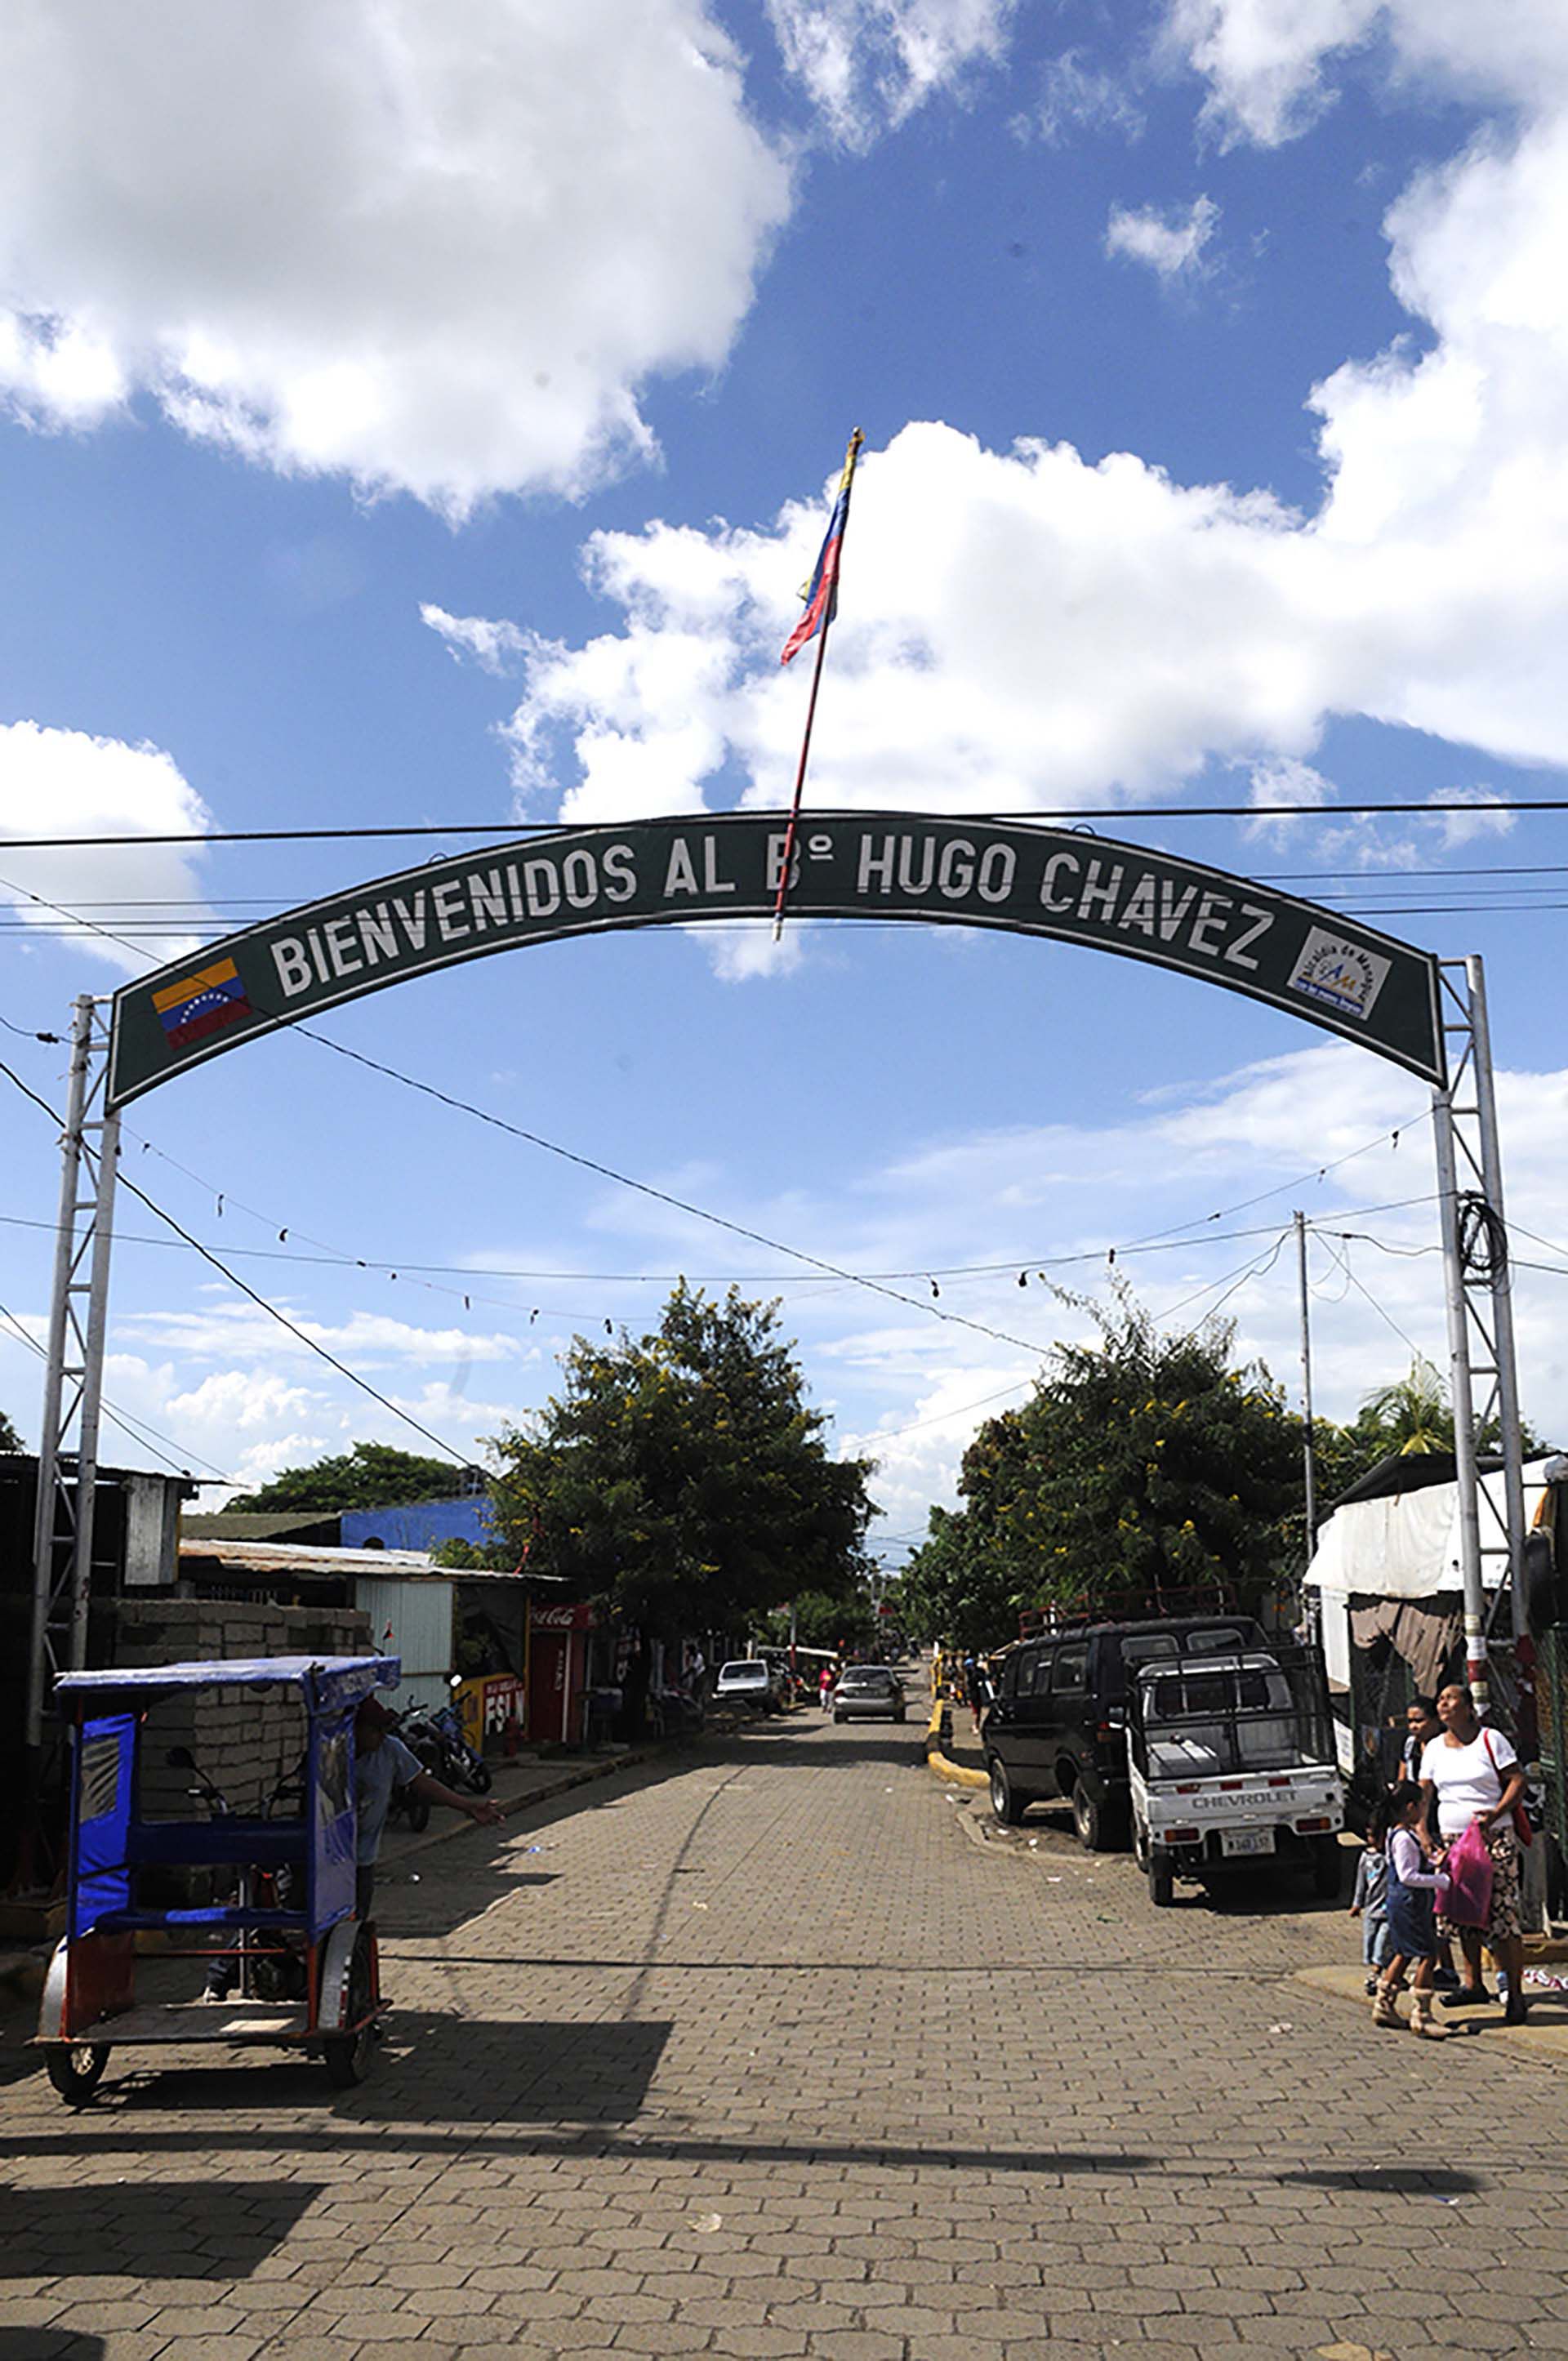 Esta es la entrada al barrio Hugo Chávez, fundado en el año 2000.